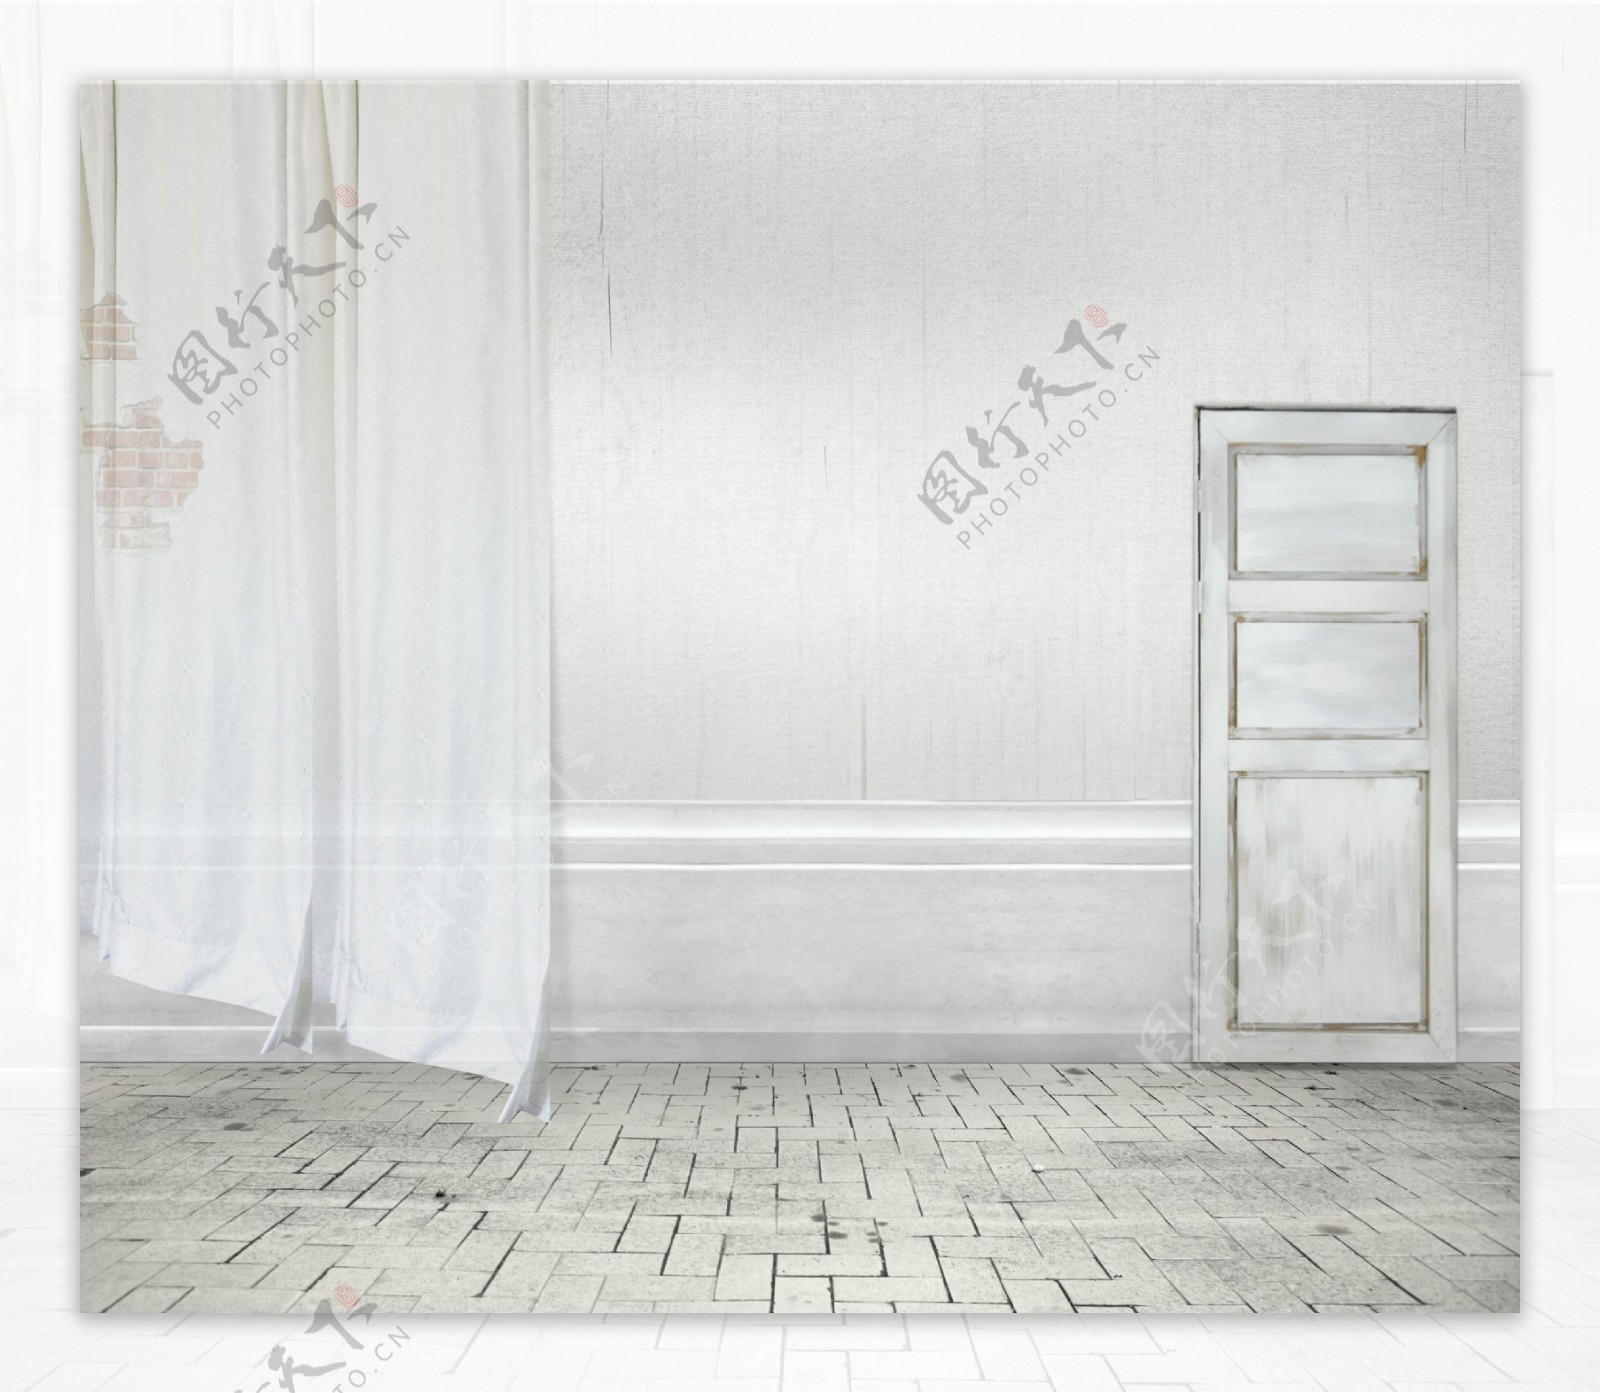 白色门与窗2婚纱背景